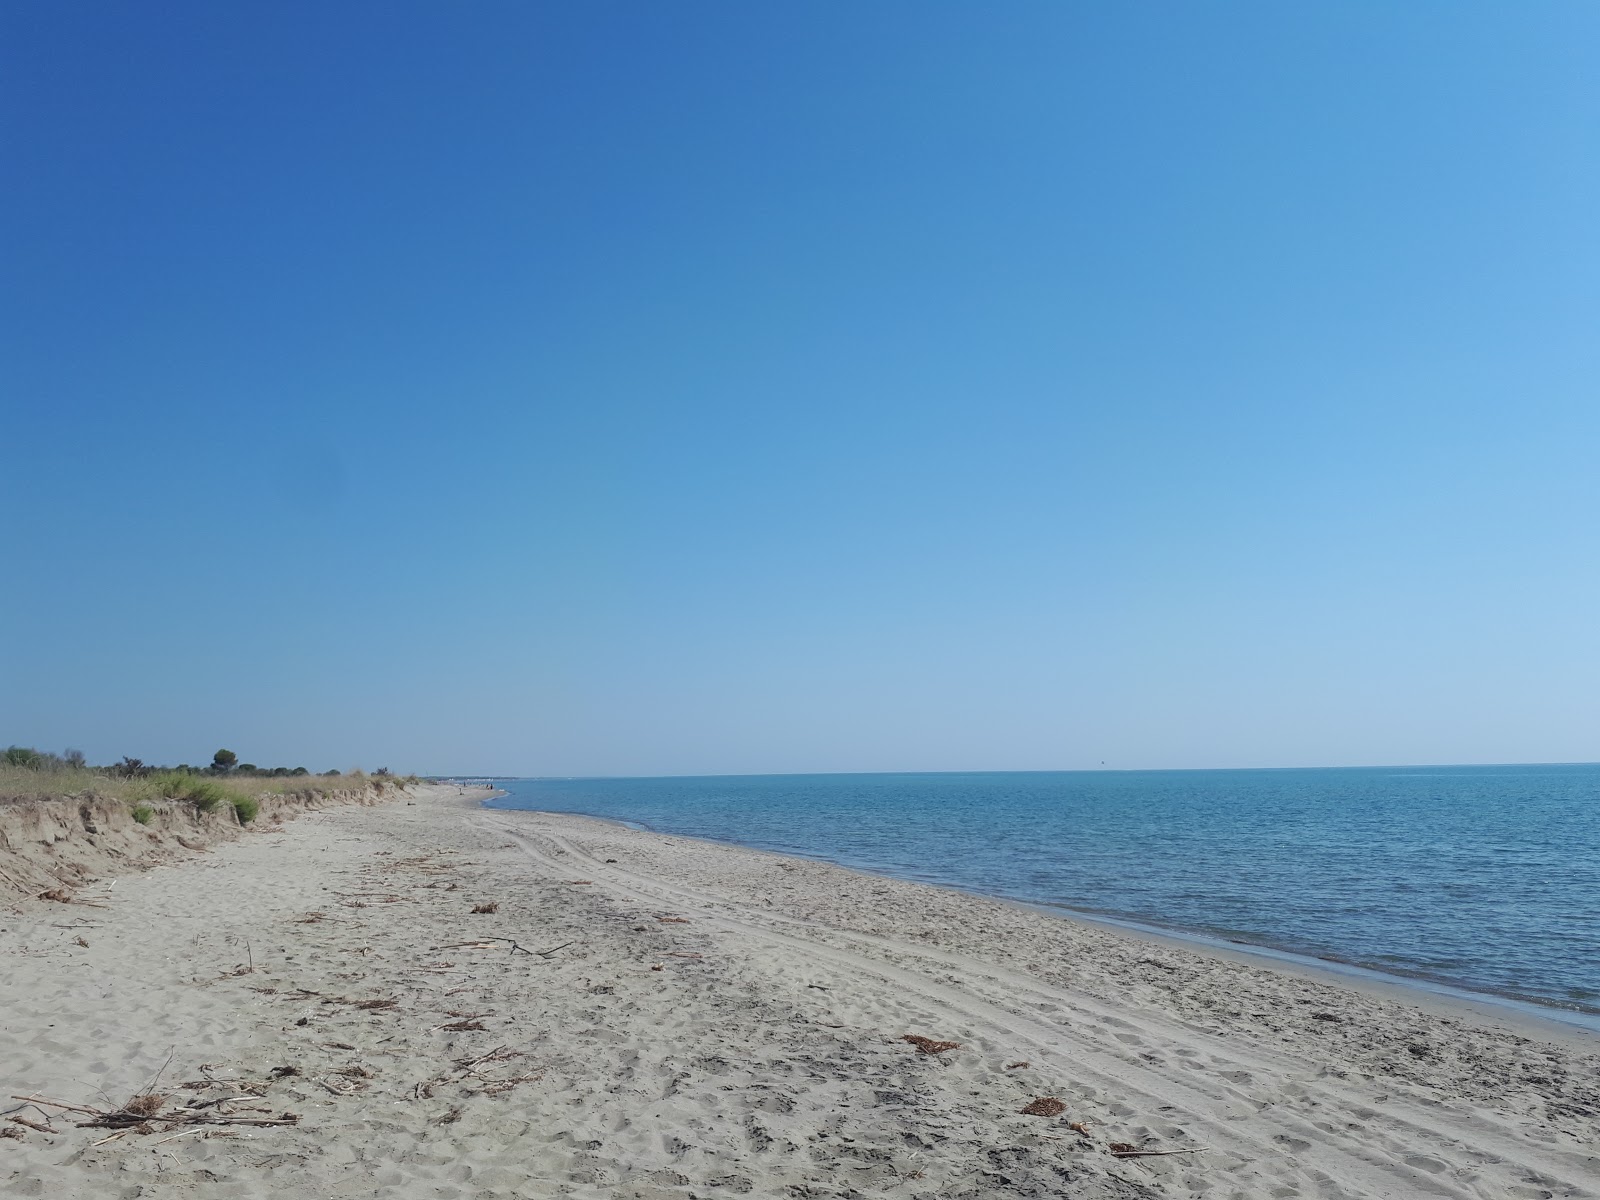 Bufaloria beach'in fotoğrafı kahverengi kum yüzey ile